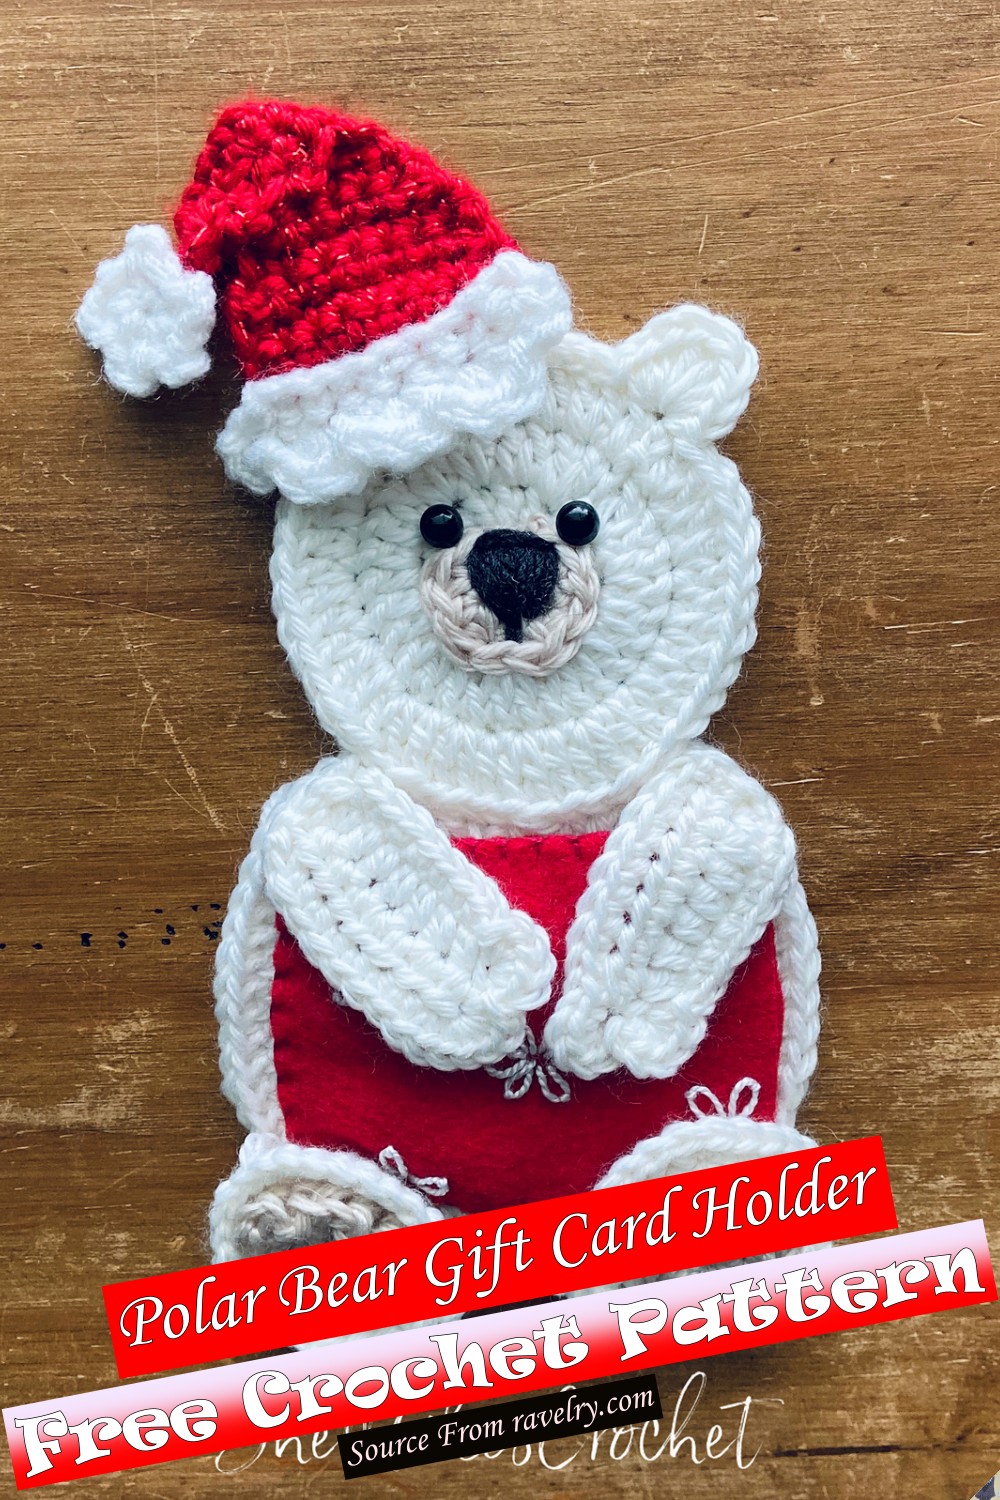 Free Crochet Polar Bear Gift Card Holder Pattern